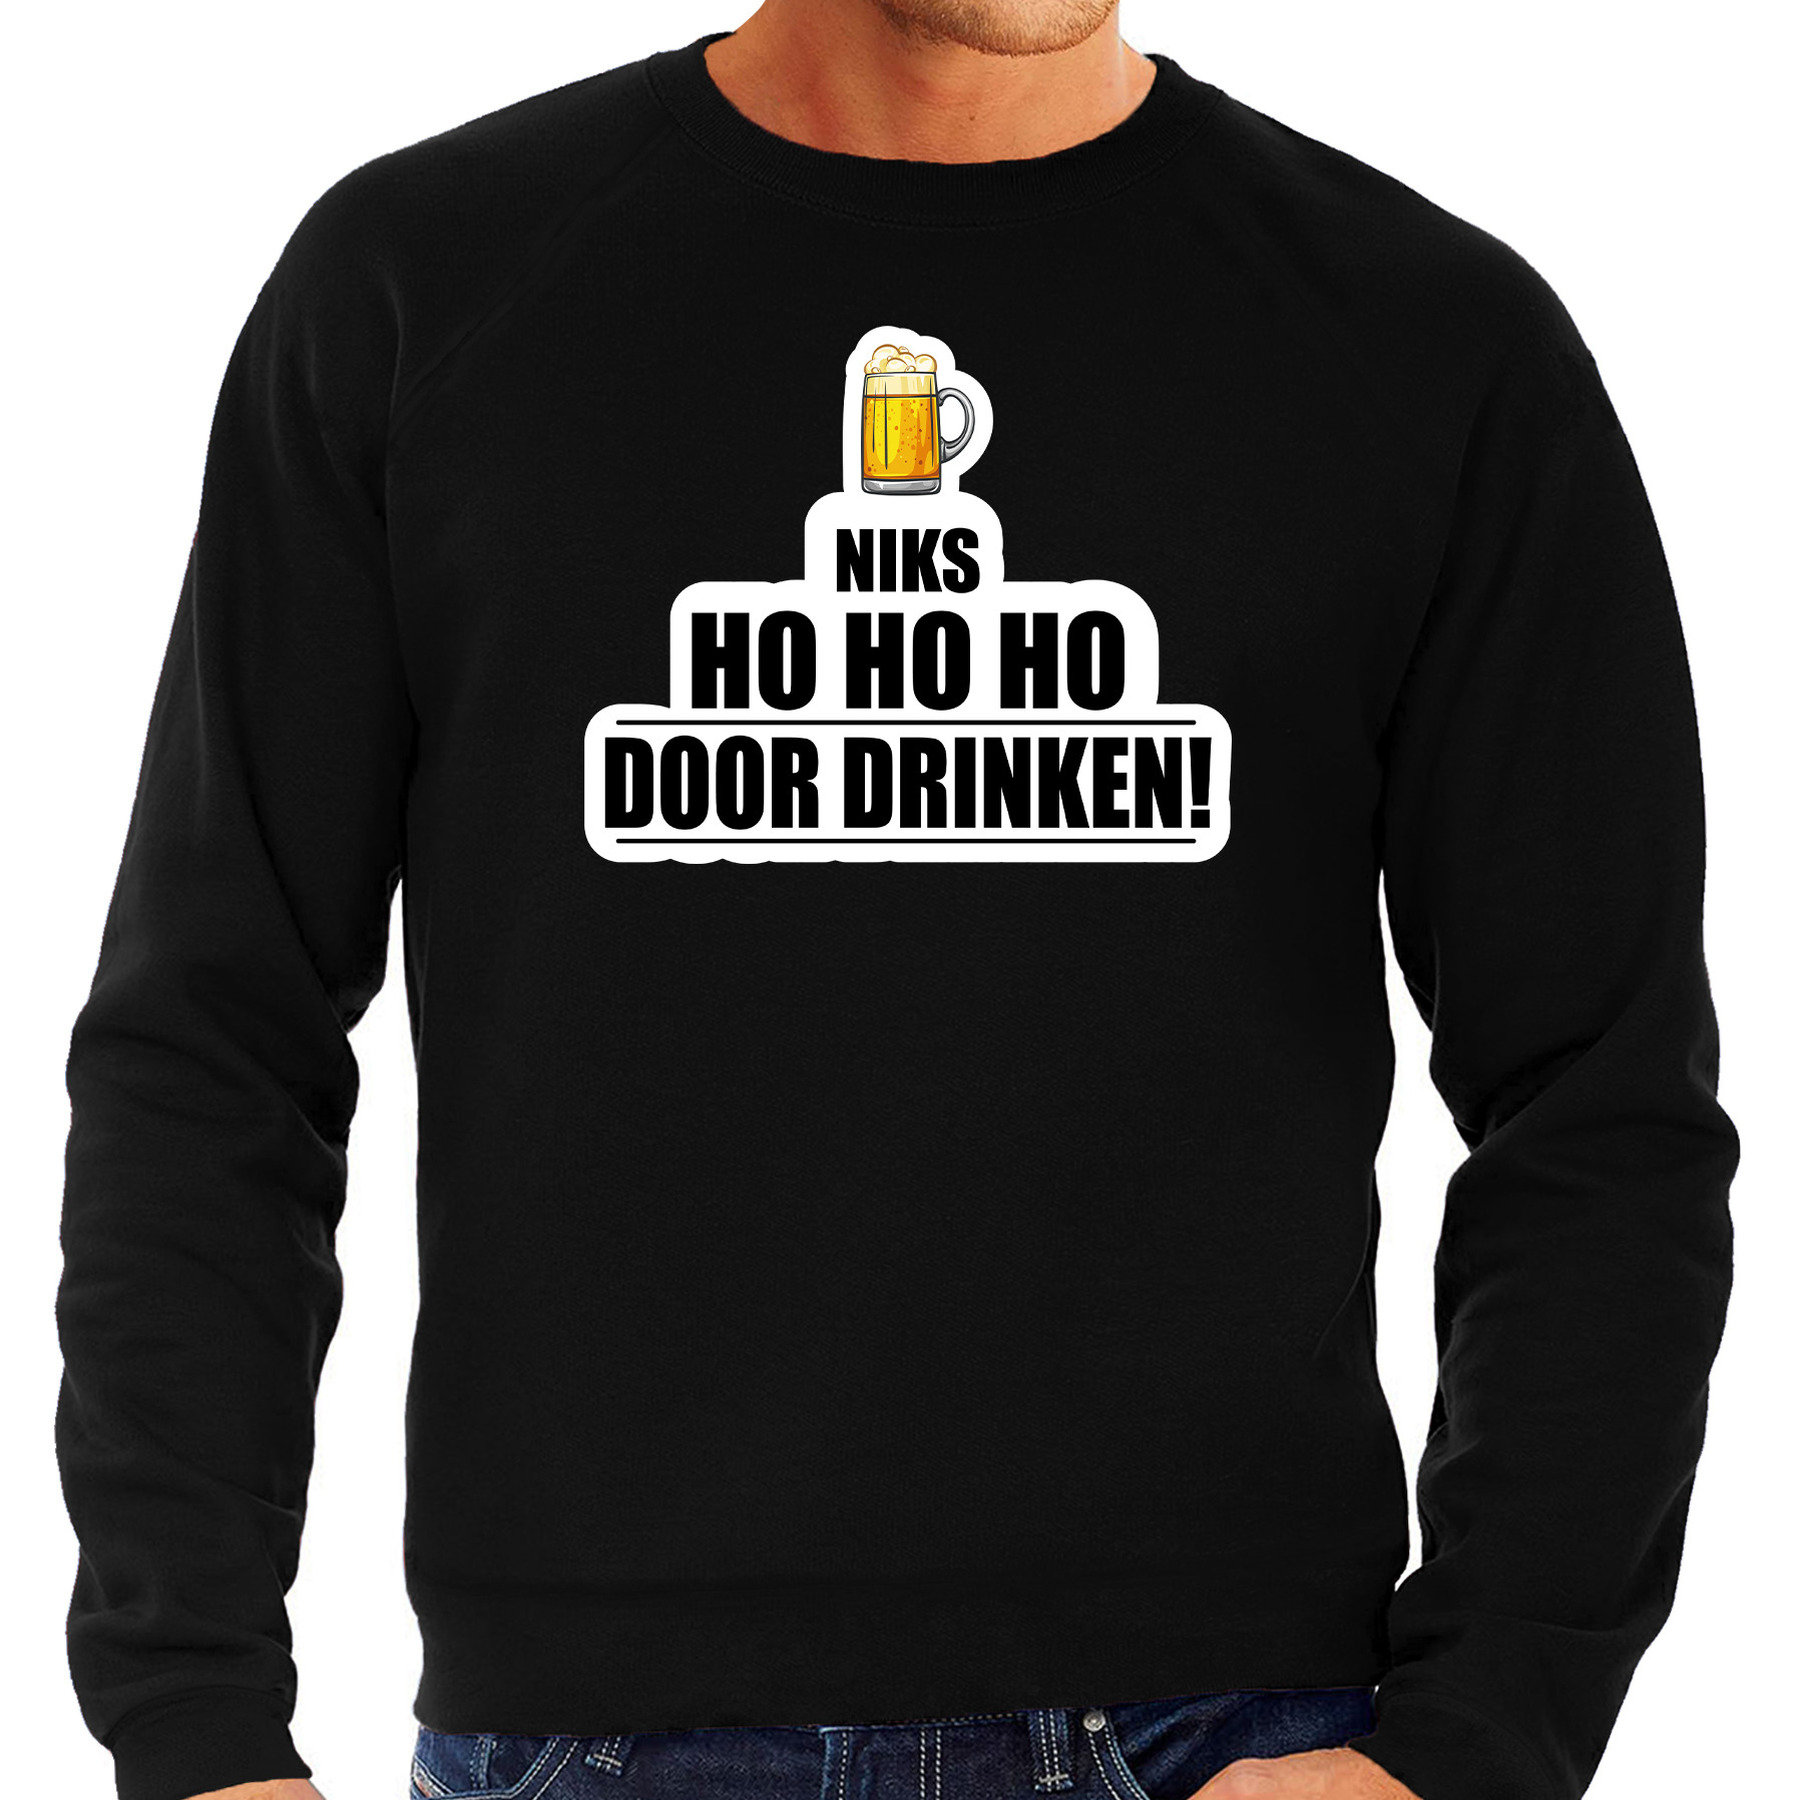 Niks ho ho ho bier doordrinken foute Kerst sweater - trui zwart voor heren